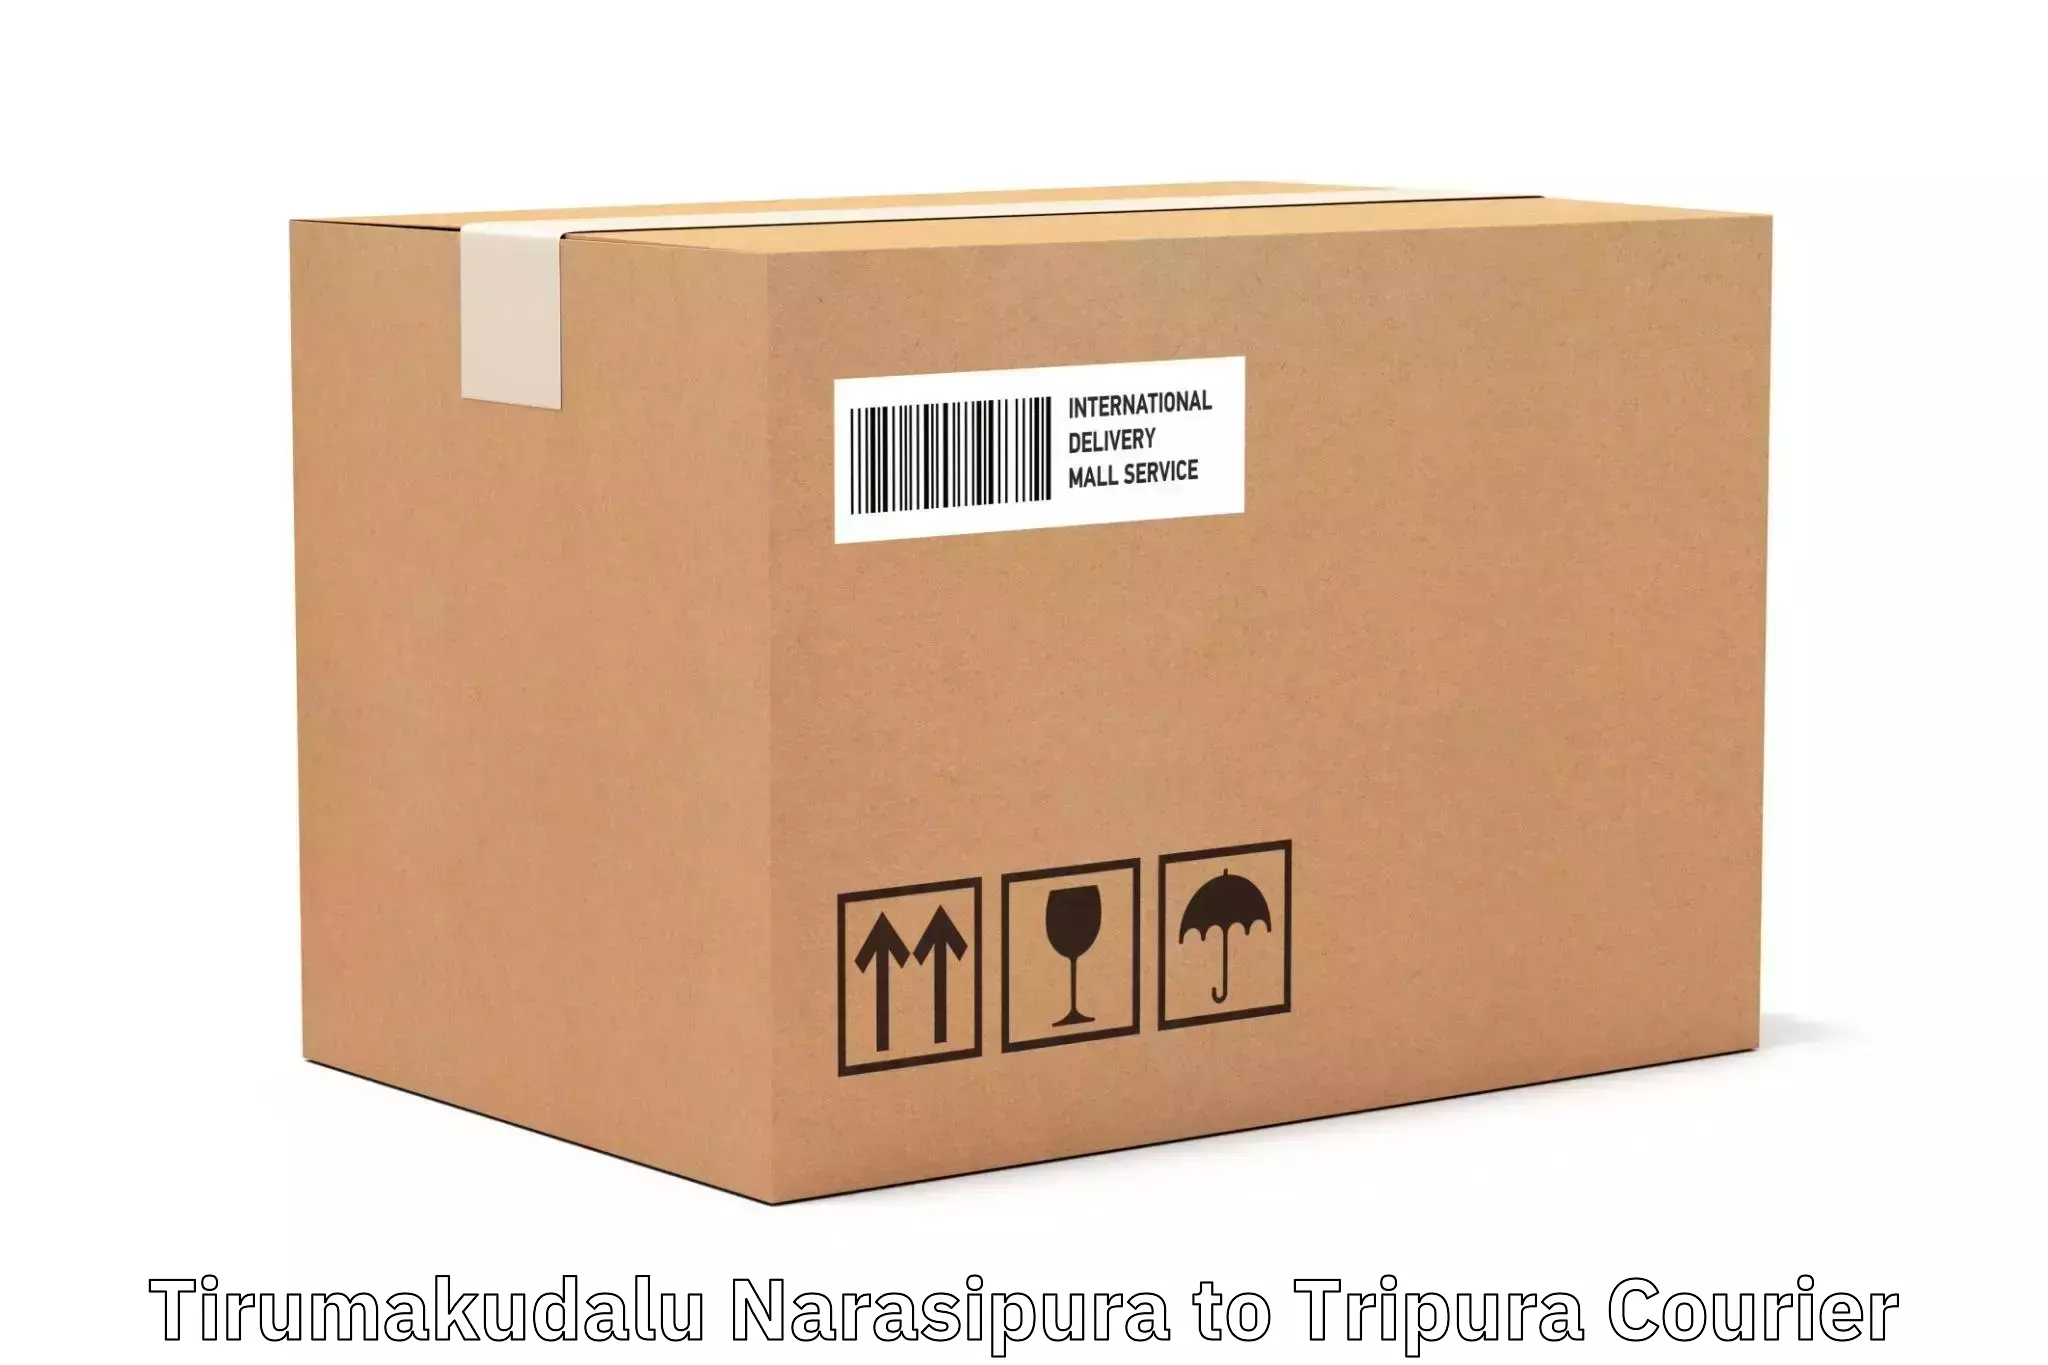 Large package courier Tirumakudalu Narasipura to Teliamura